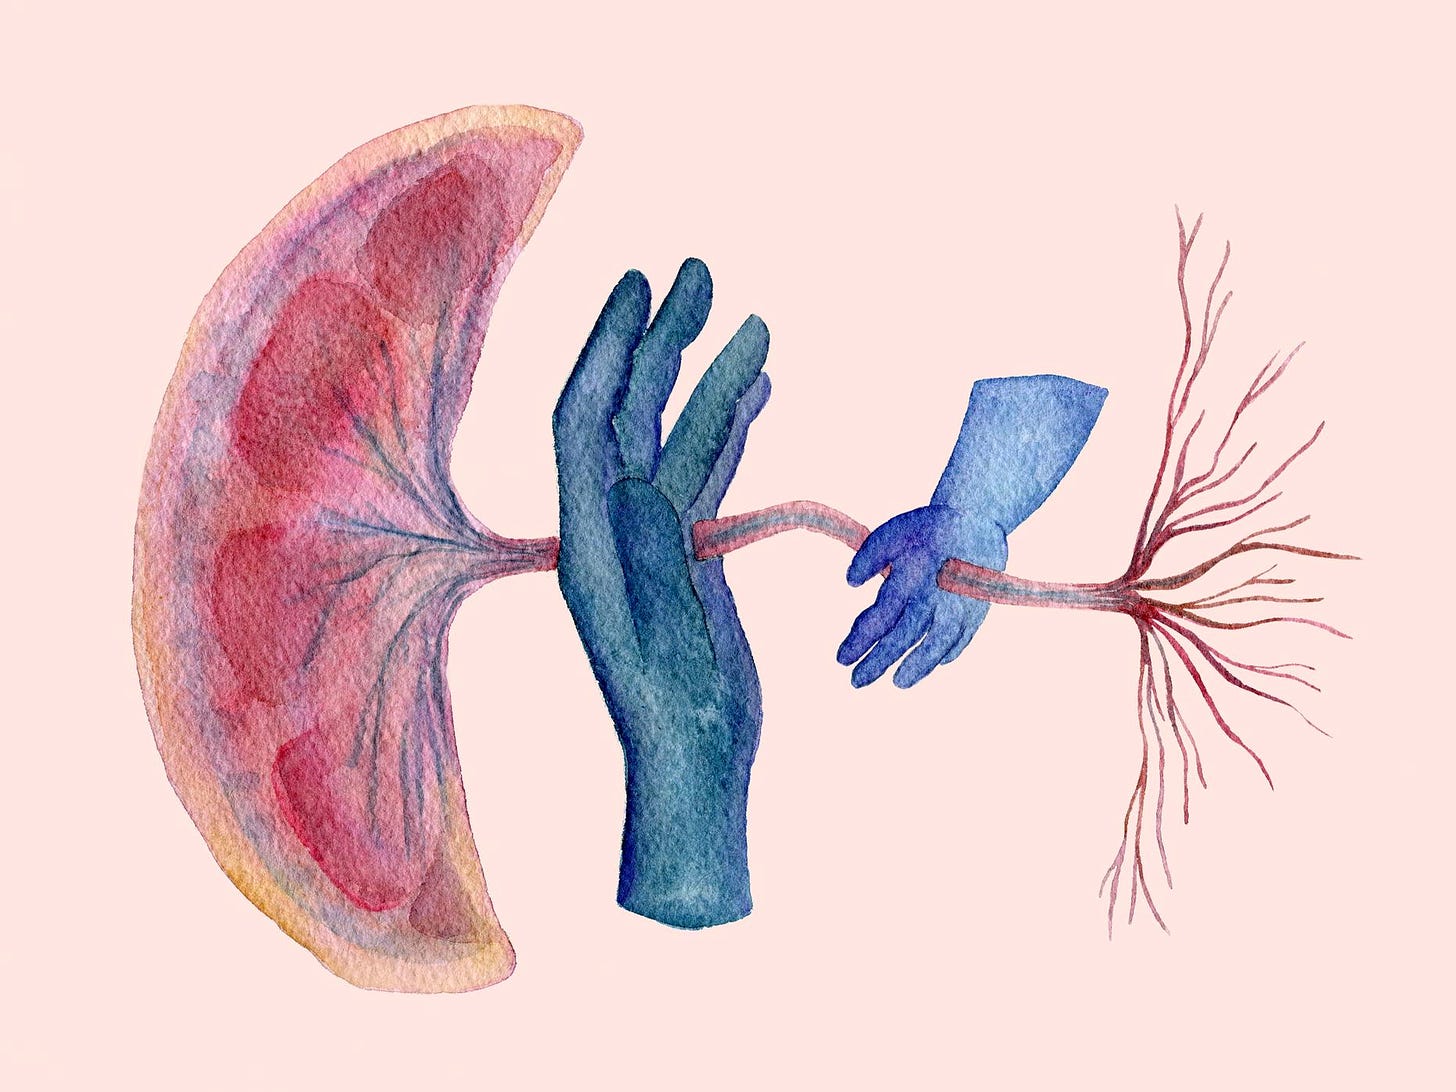 Tekening van een placenta en de navelstreng. Tussen de navelstreng zie je een grote en kleine hand in het blauw